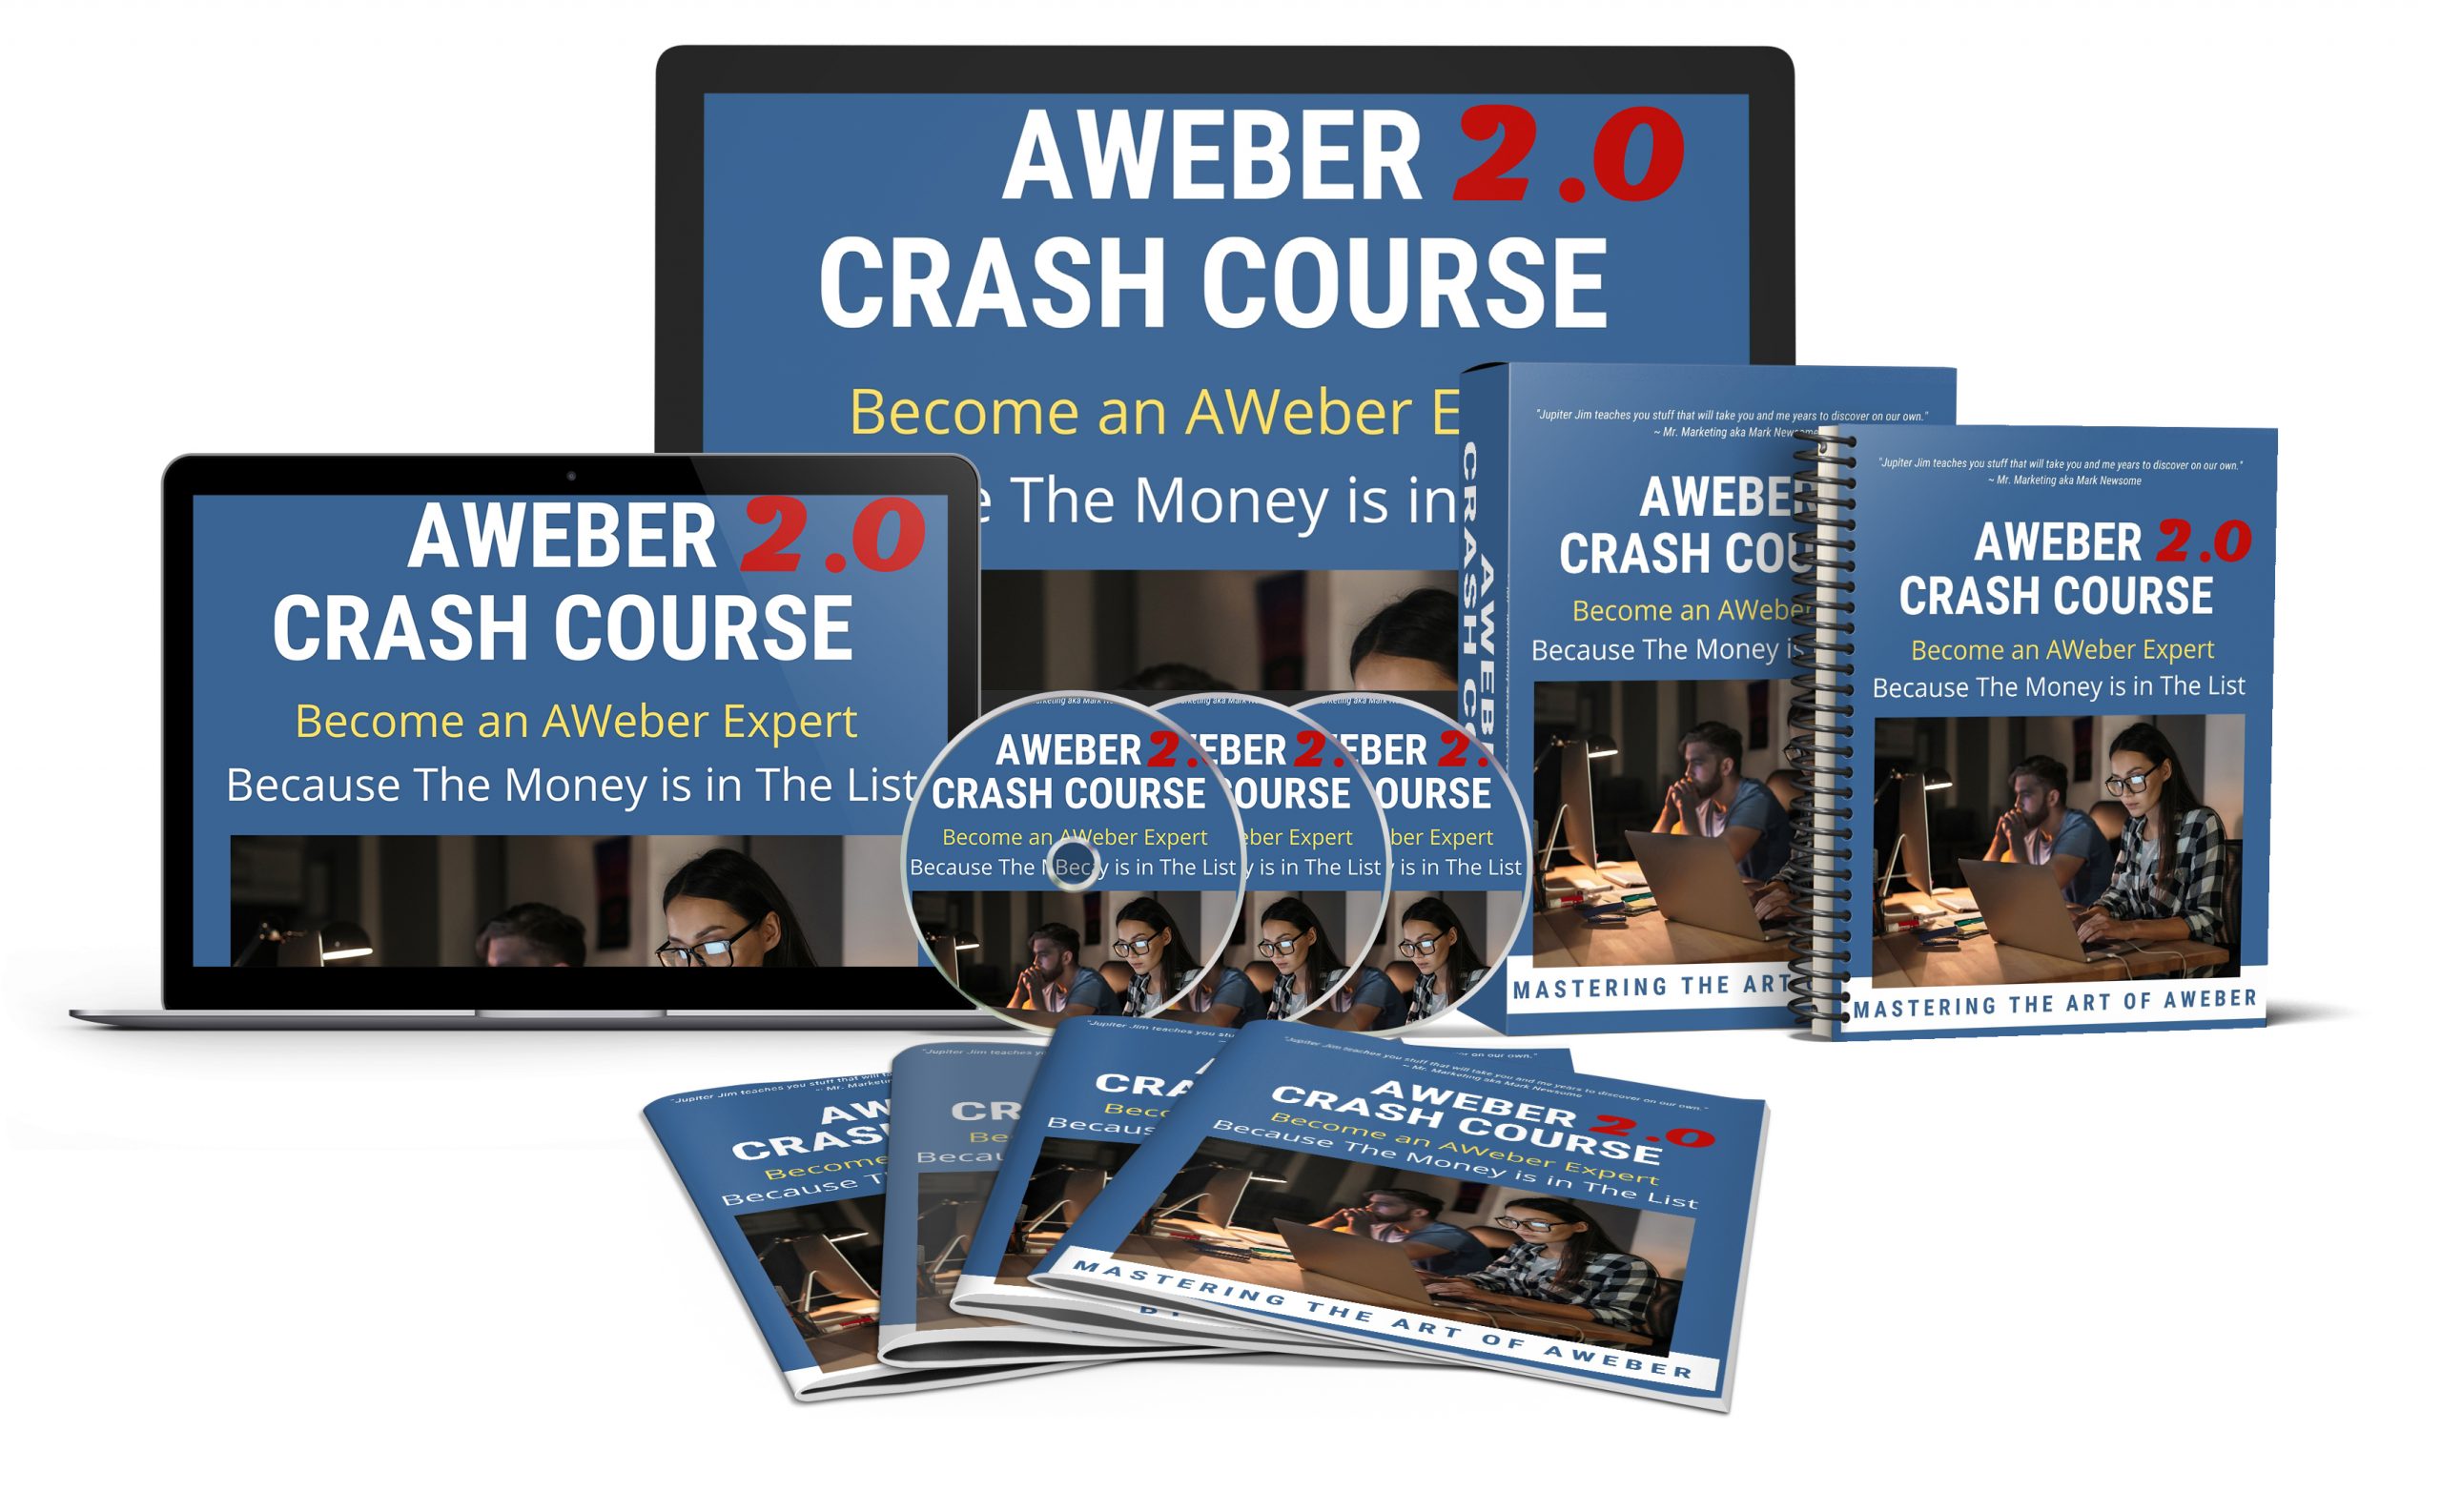 AWeber Crash Course 2.0